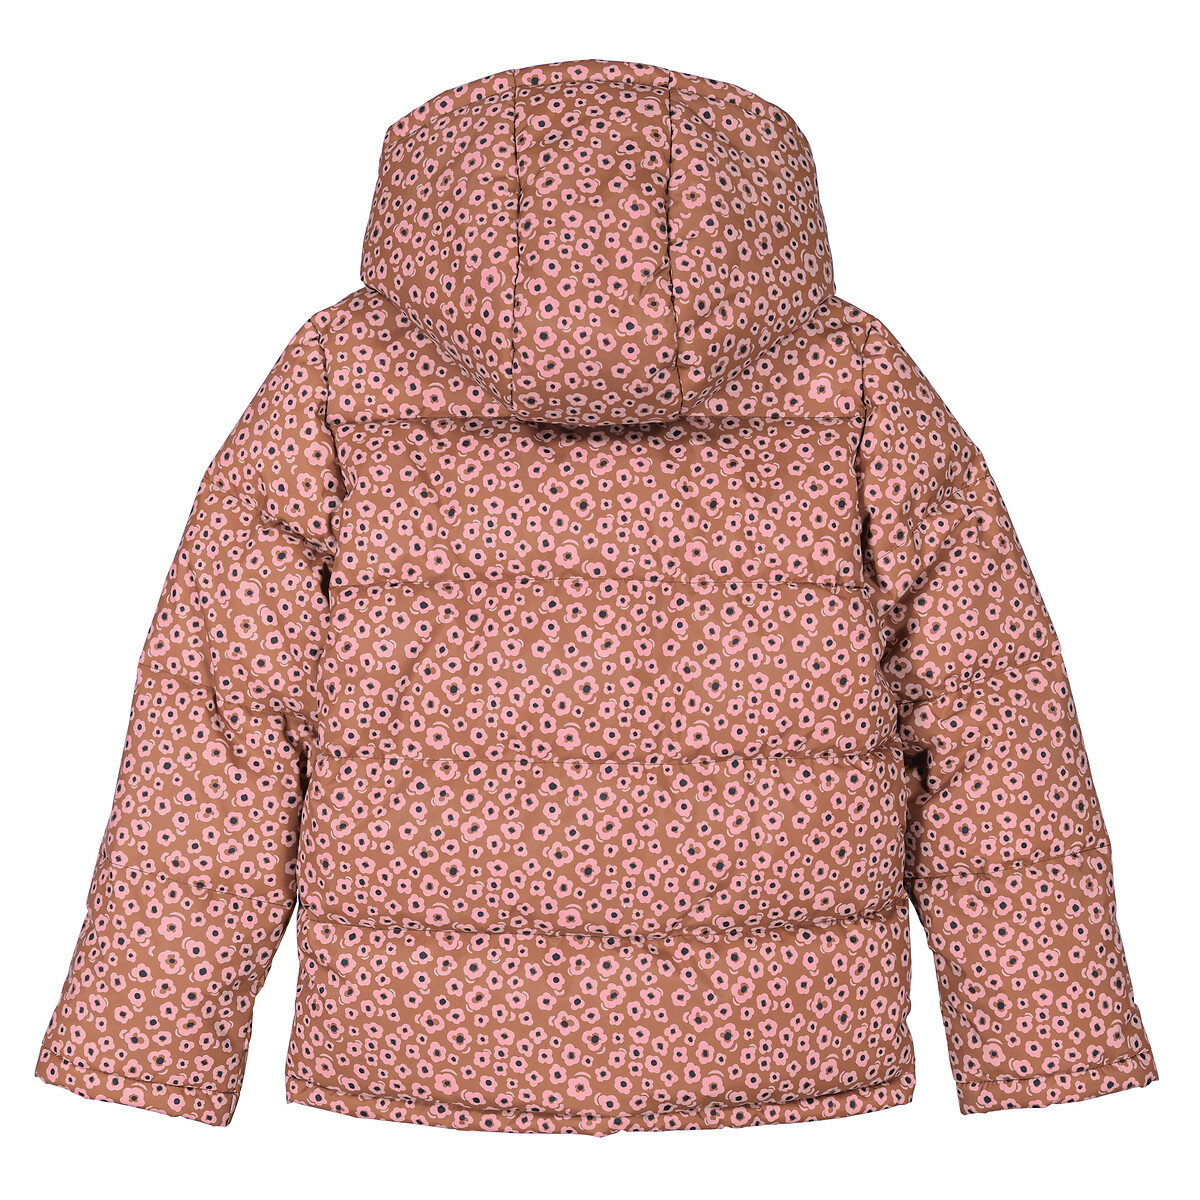 Куртка Стеганая утепленная с капюшоном цветочный принт 10 лет - 138 см каштановый LaRedoute, размер 10 лет - 138 см - фото 5